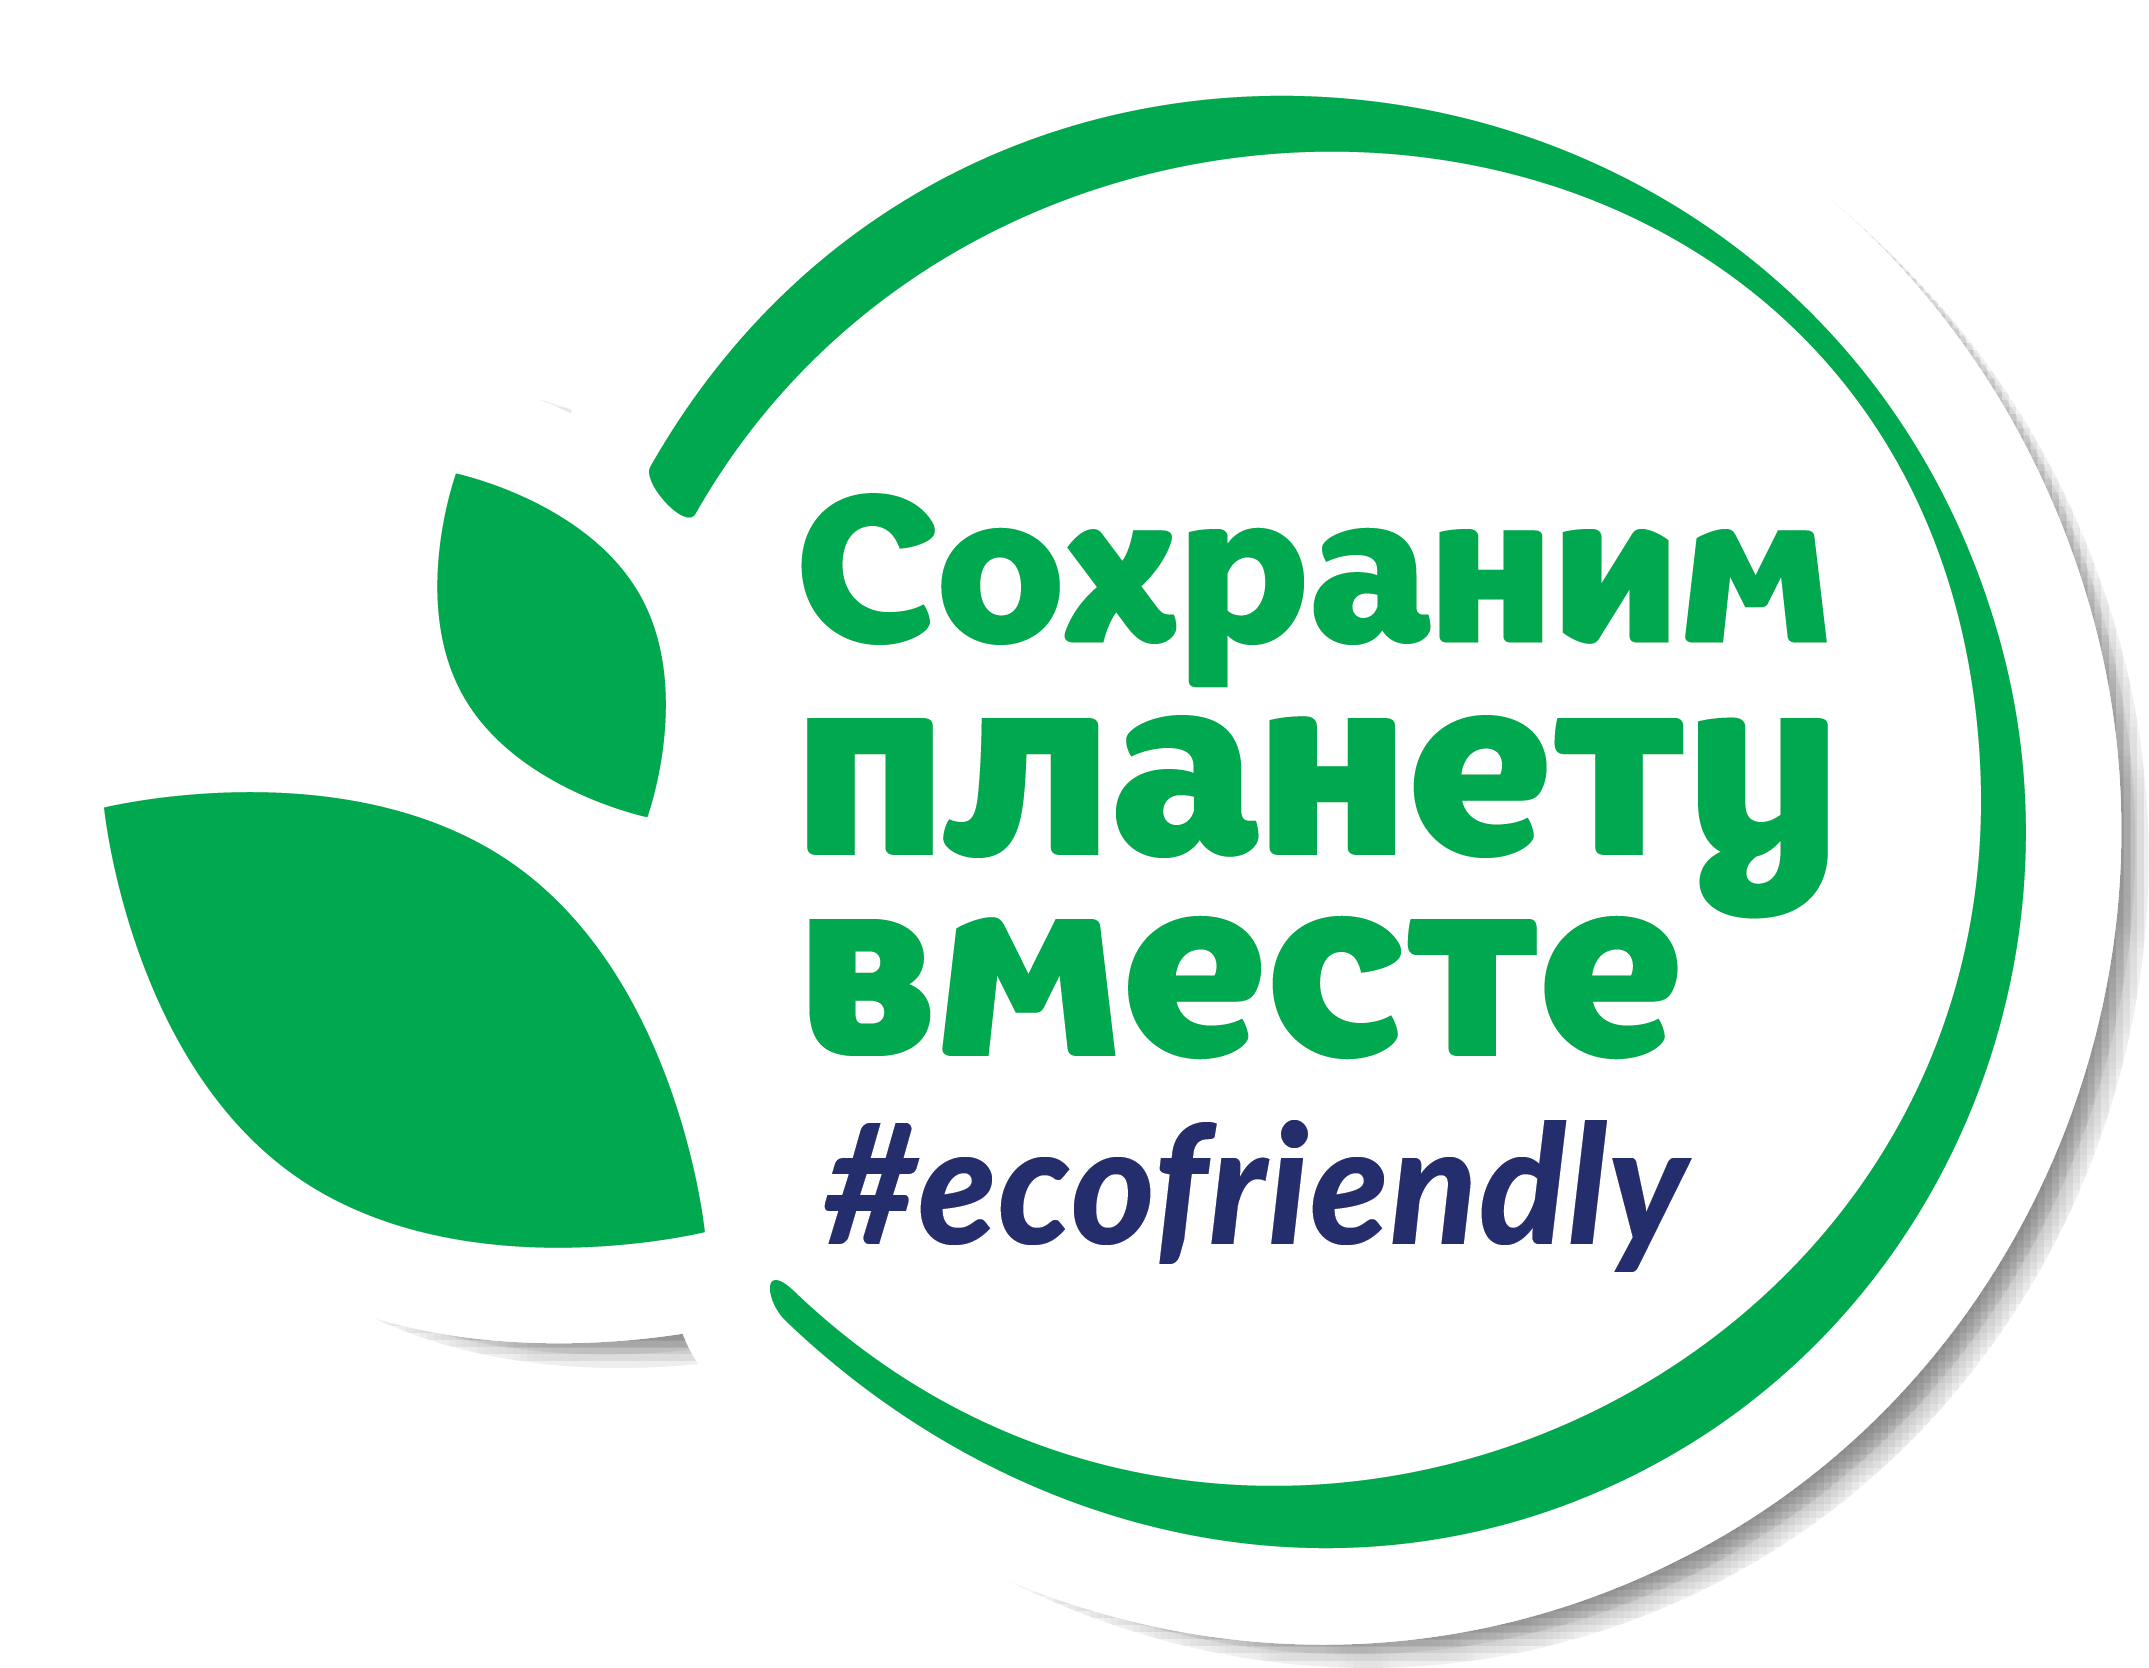 Что такое эко-френдли (eco-friendly)